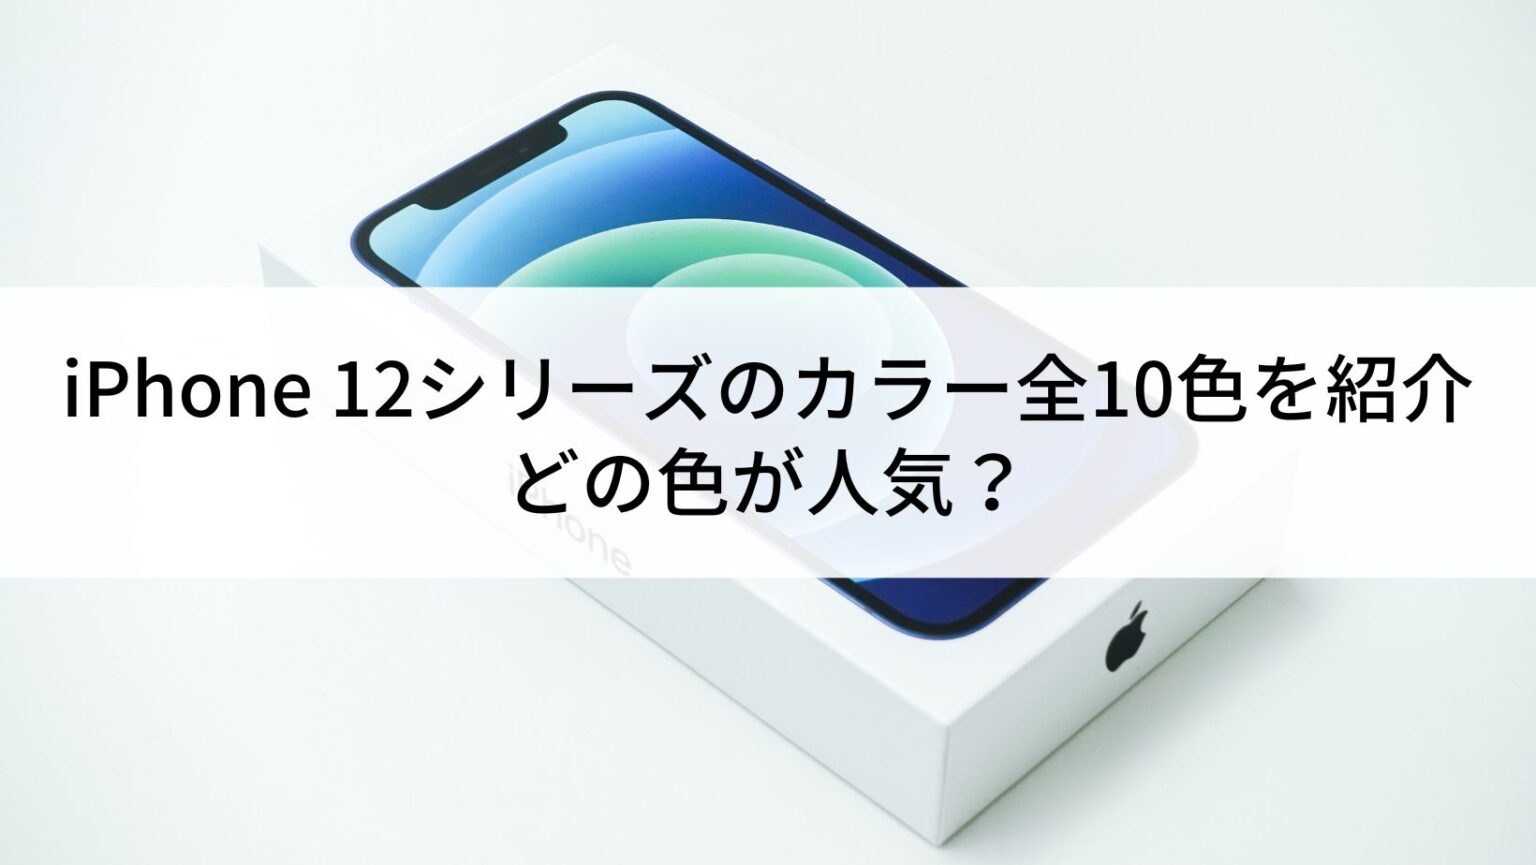 iPhone12 mini（64GB）の中古 | SIMフリーの中古スマホなら【にこスマ】